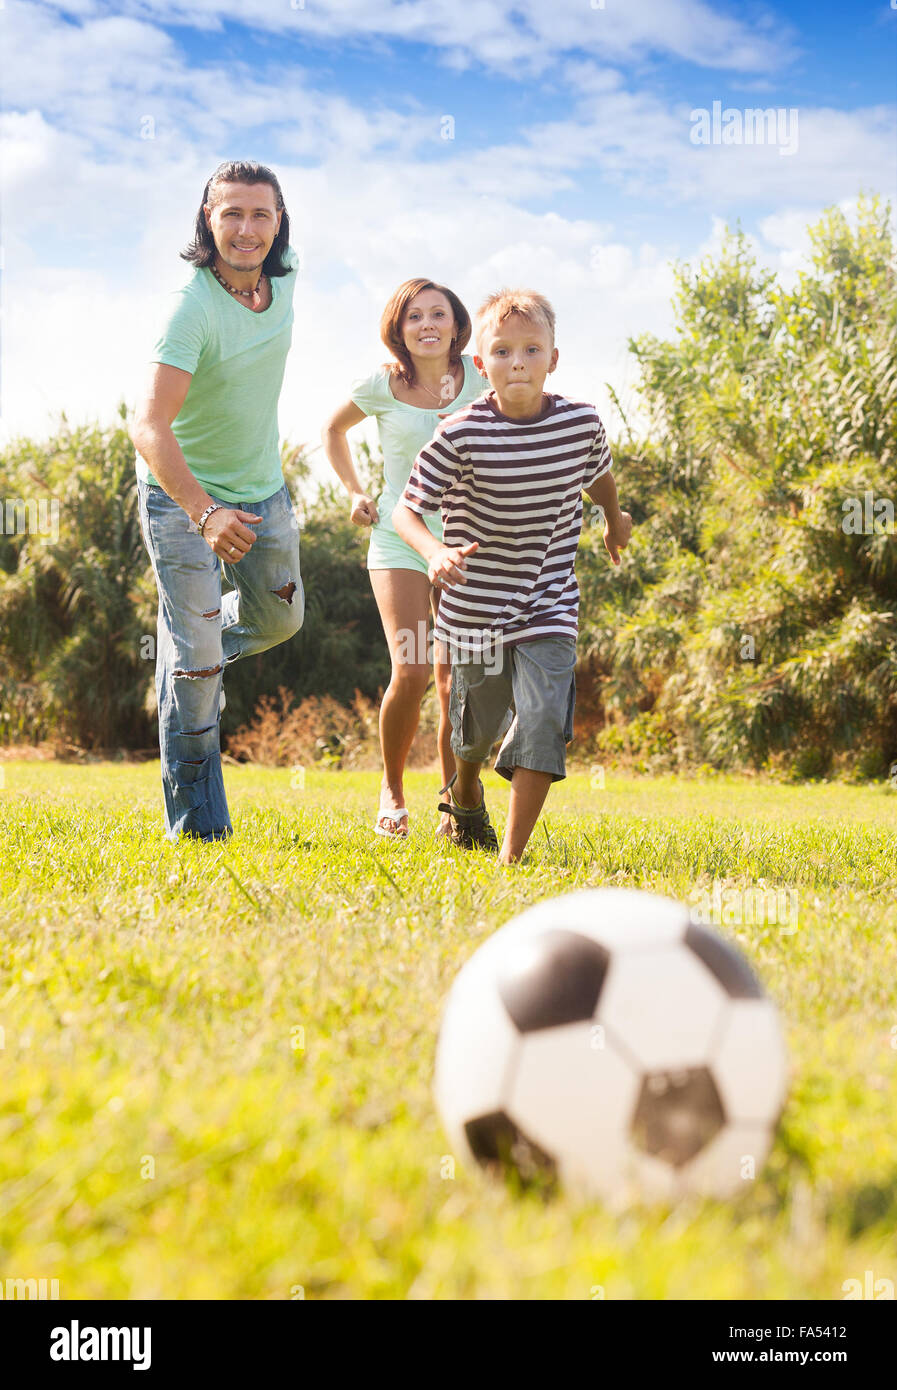 Glückliches Paar mit Sohn spielen mit Fußball im Sommerpark Stockfoto